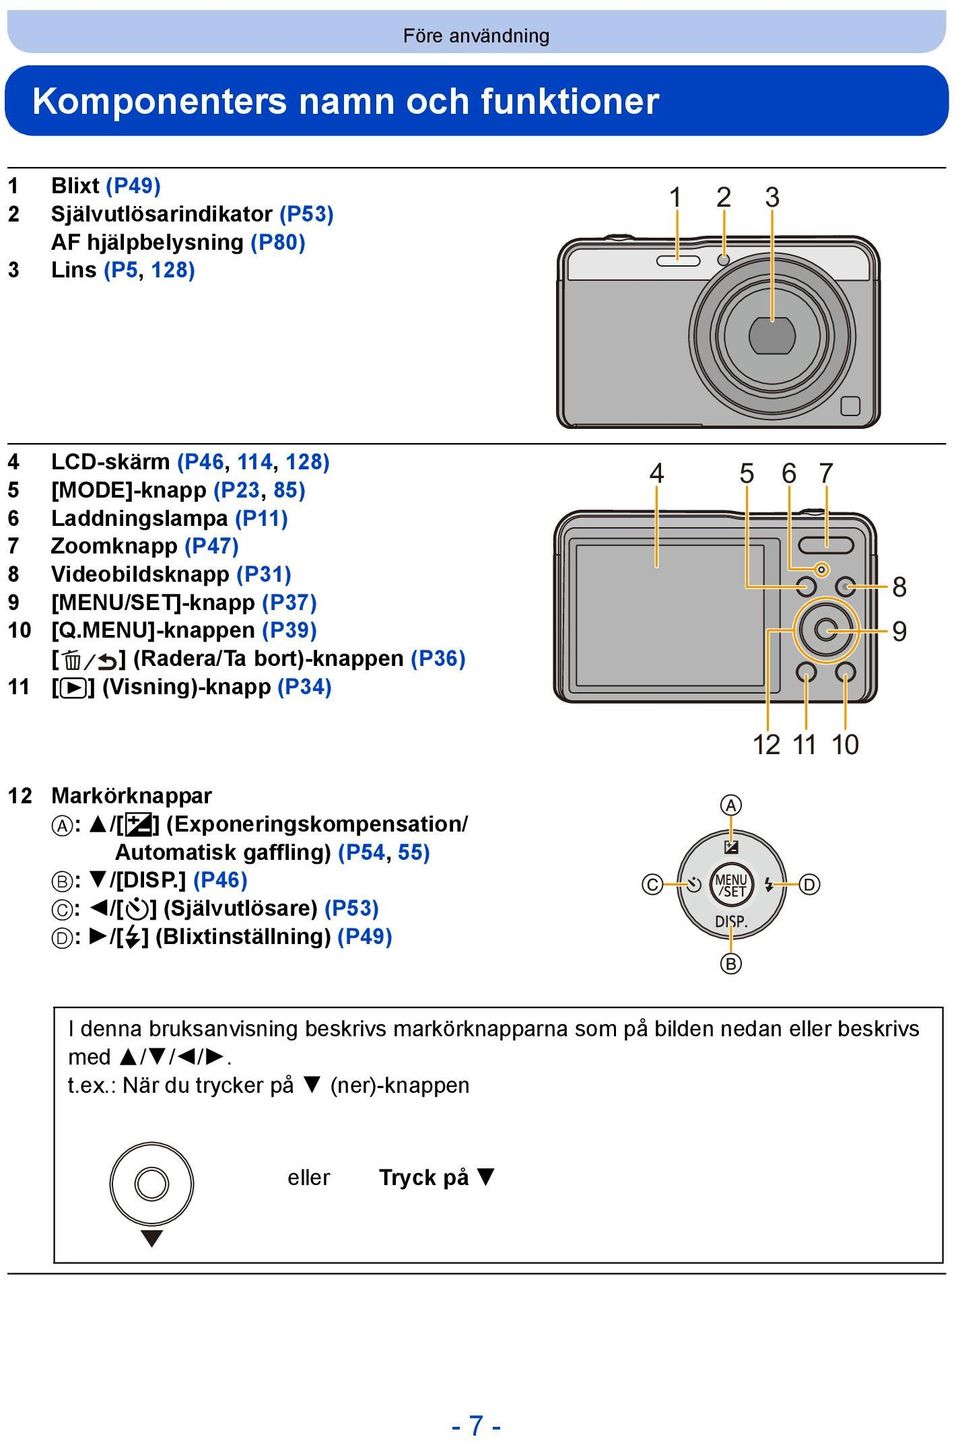 MENU]-knappen (P39) [ ] (Radera/Ta bort)-knappen (P36) 11 [(] (Visning)-knapp (P34) 4 5 6 7 8 9 12 11 10 12 Markörknappar A: 3/[È] (Exponeringskompensation/ Automatisk gaffling)